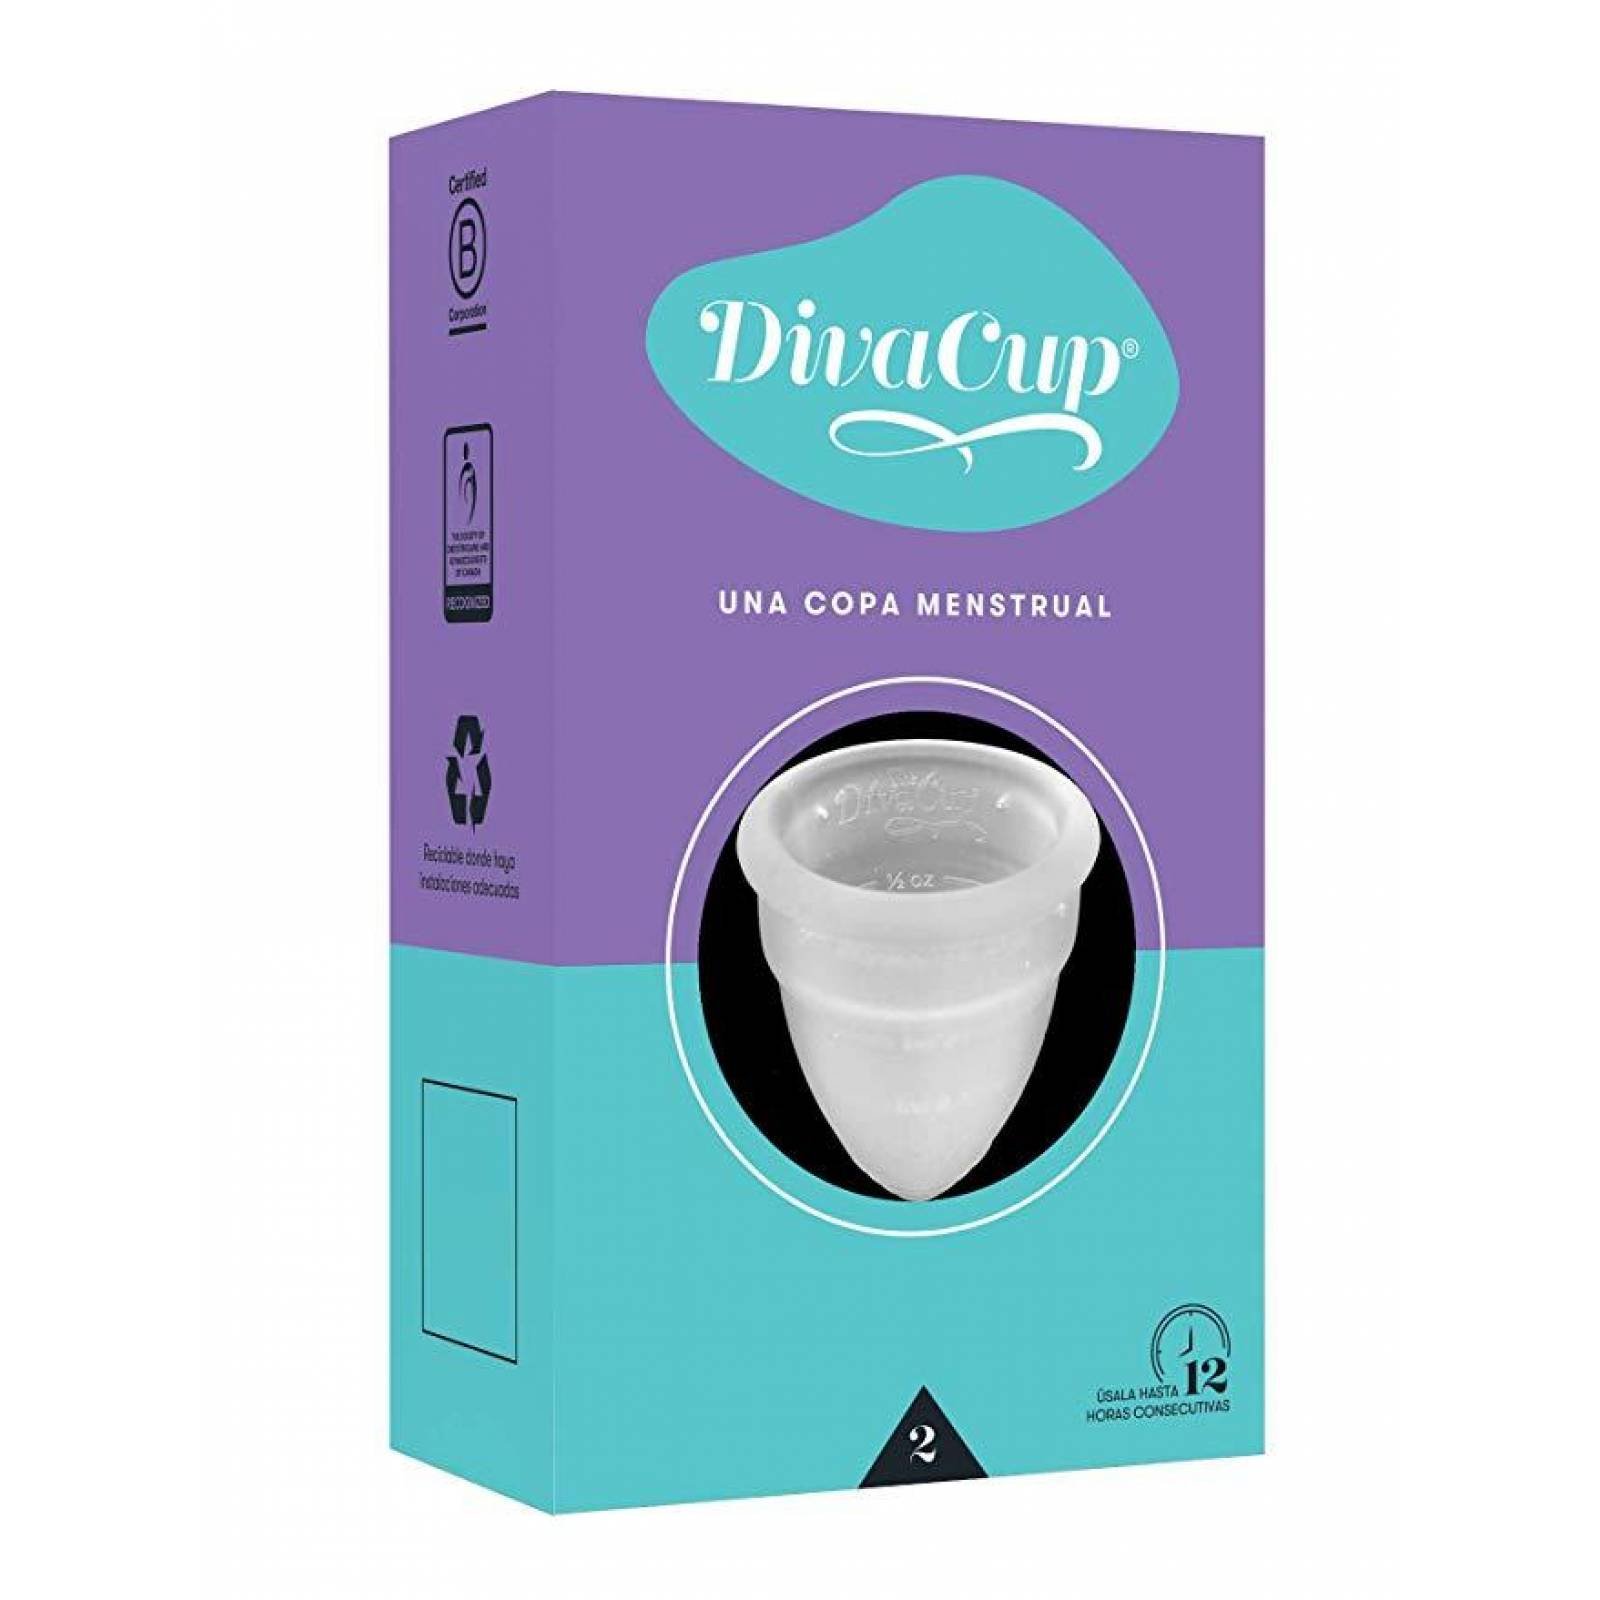 The Diva Cup Copa Menstrual Reusable Modelo 2 caja 1 pieza 